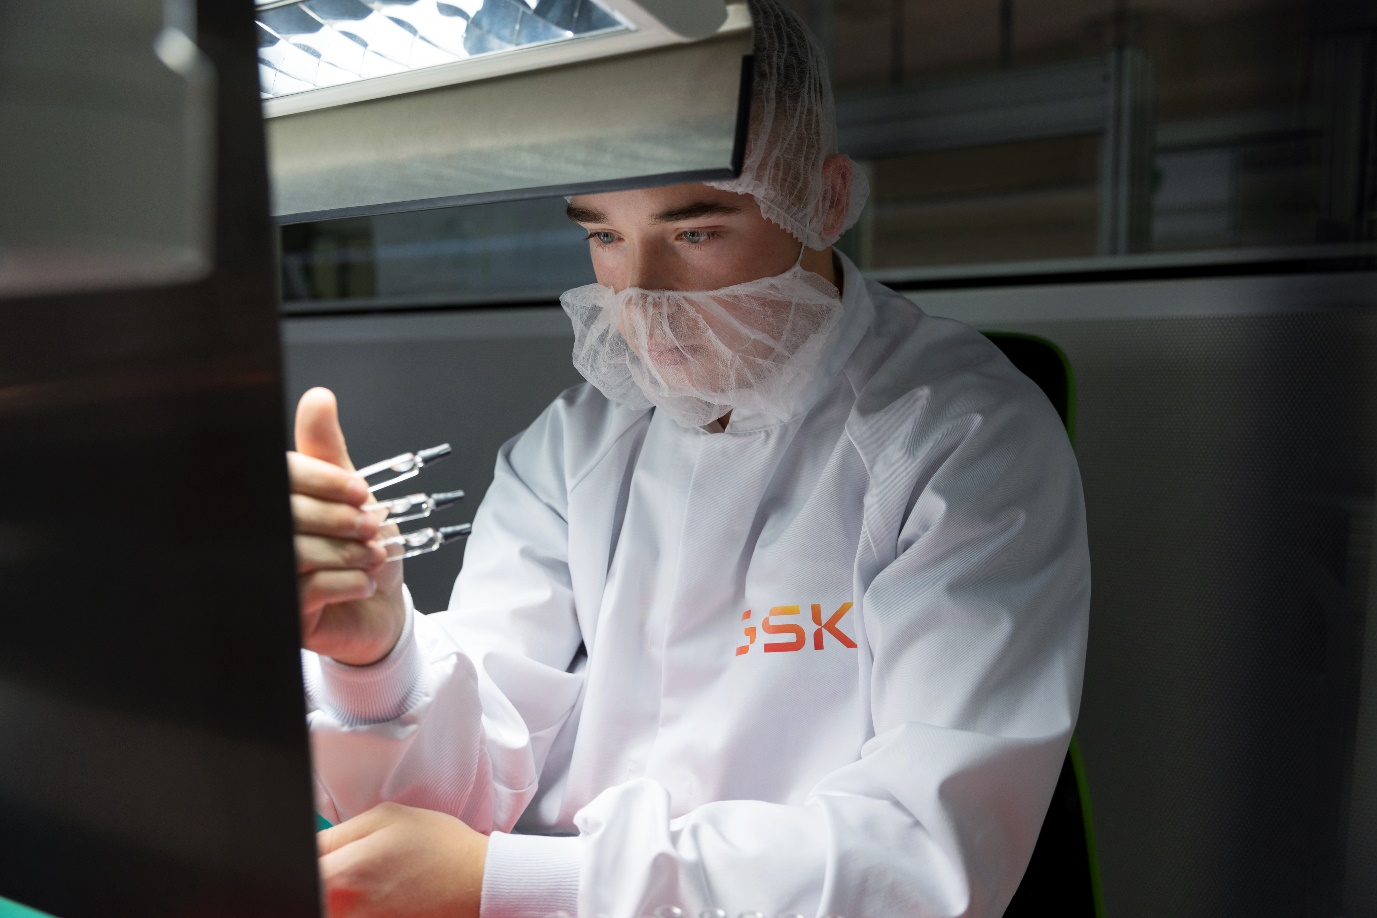 GSK tiên phong nghiên cứu công nghệ vắc-xin cải tiến mới nhằm bảo vệ nhân loại khỏi các căn bệnh truyền nhiễm